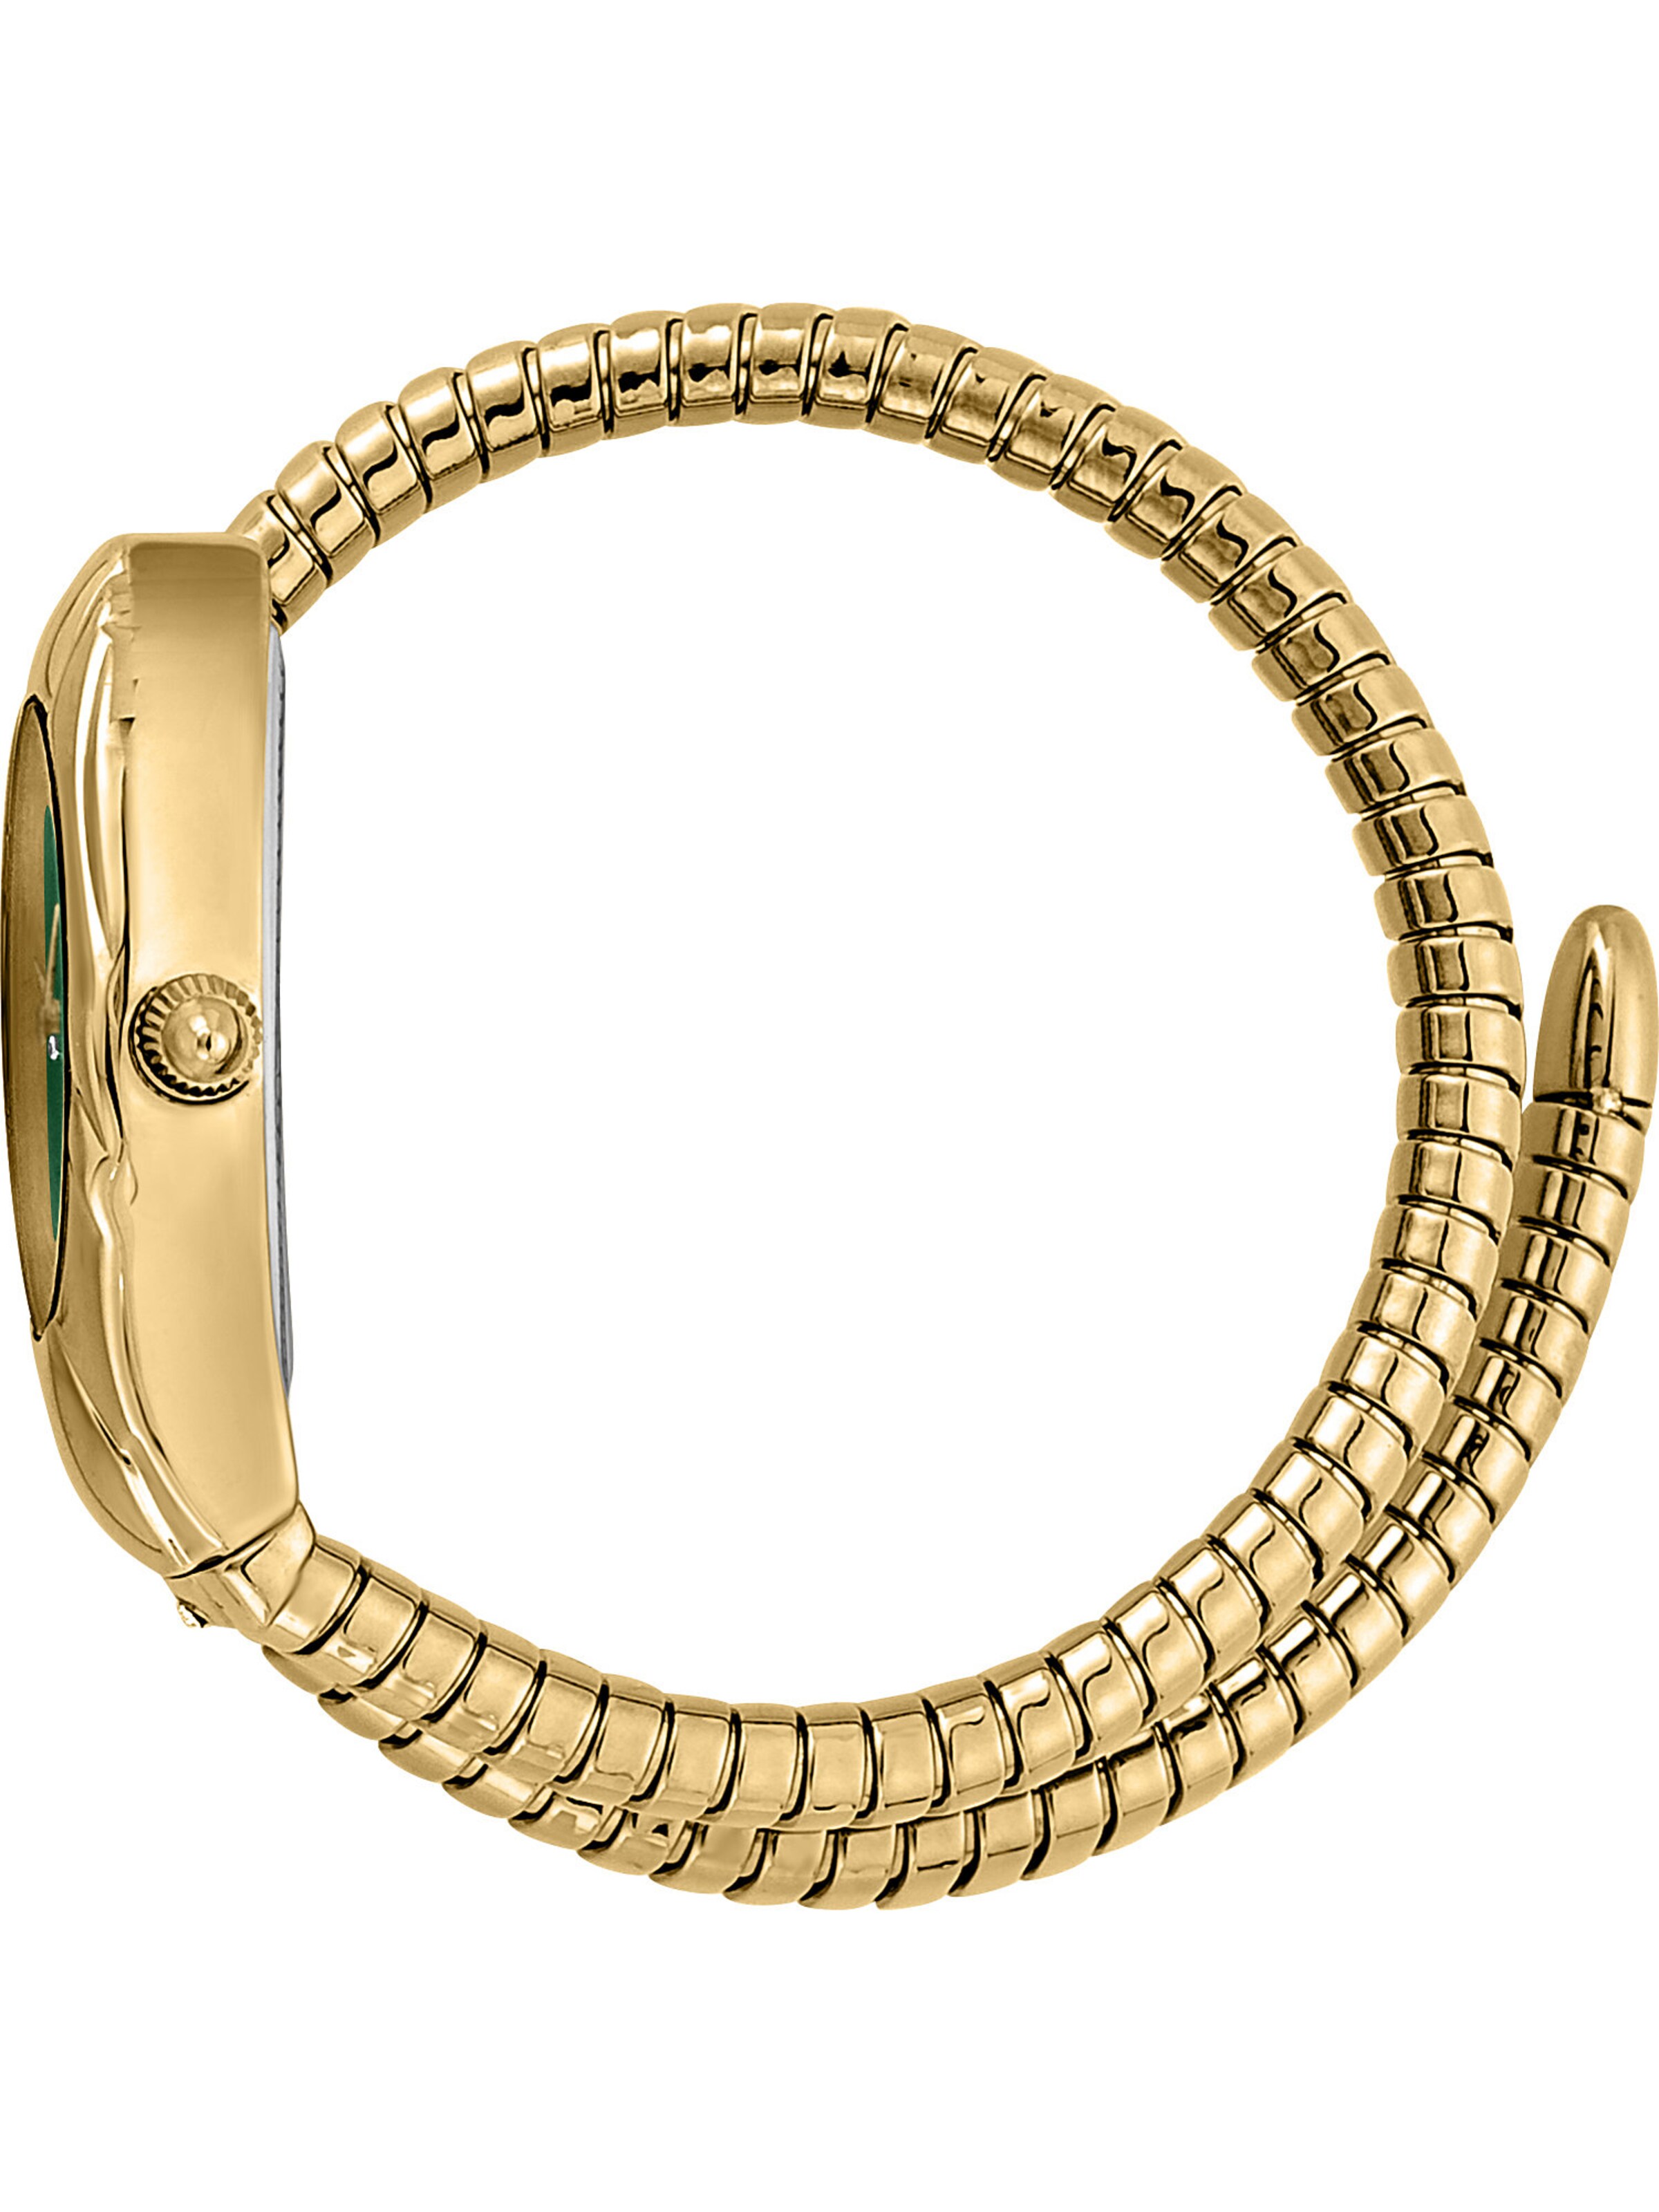 Frauen Uhren Just Cavalli Analoguhr in Gold - OJ82789